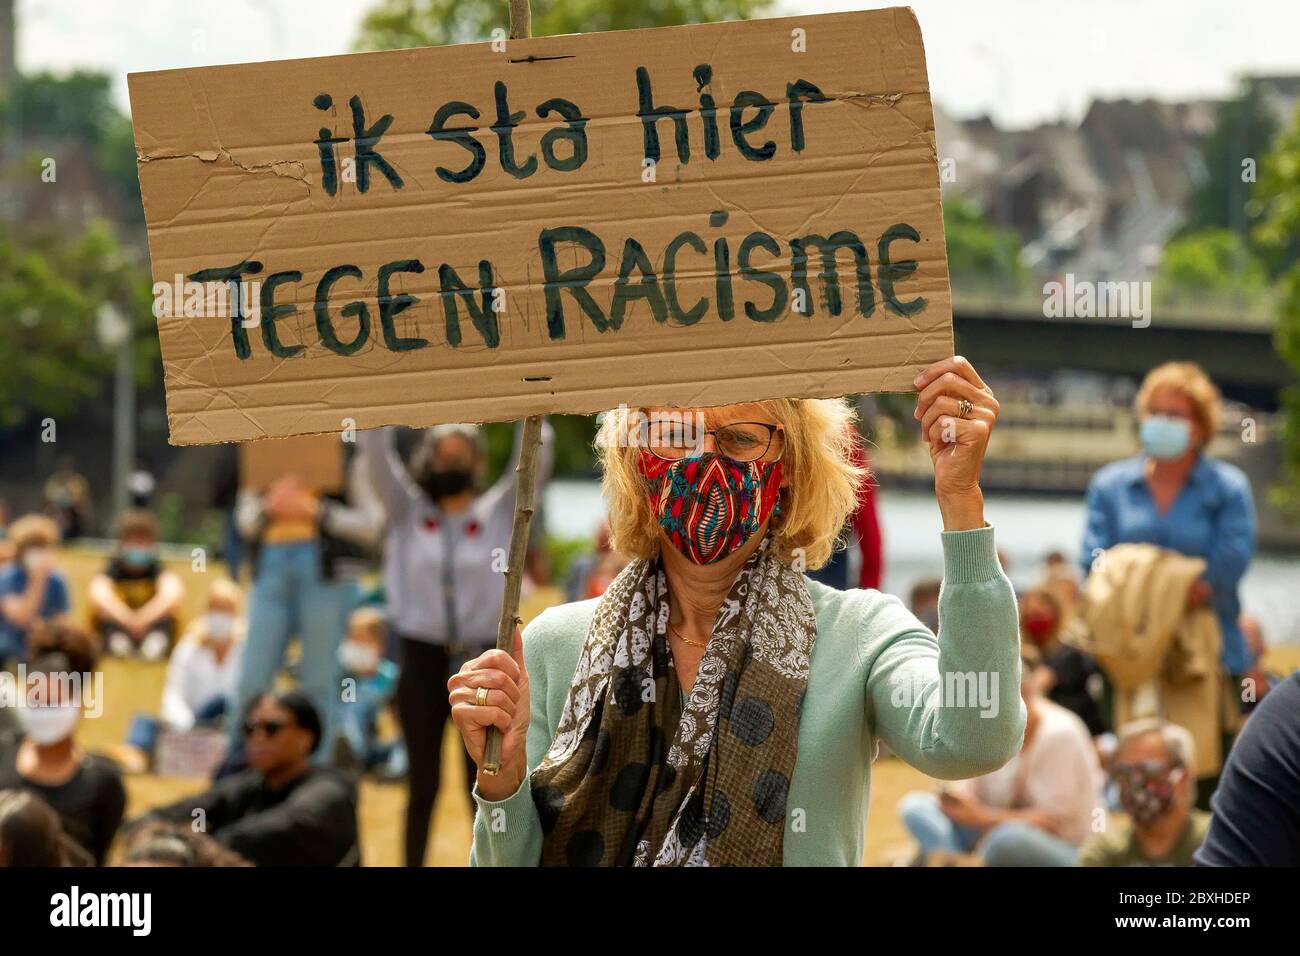 7 giugno 2020 Maastricht, Paesi Bassi il 7 giugno 2020, a Maastricht, Paesi Bassi, si riuniscono per una protesta contro il razzismo Foto Stock